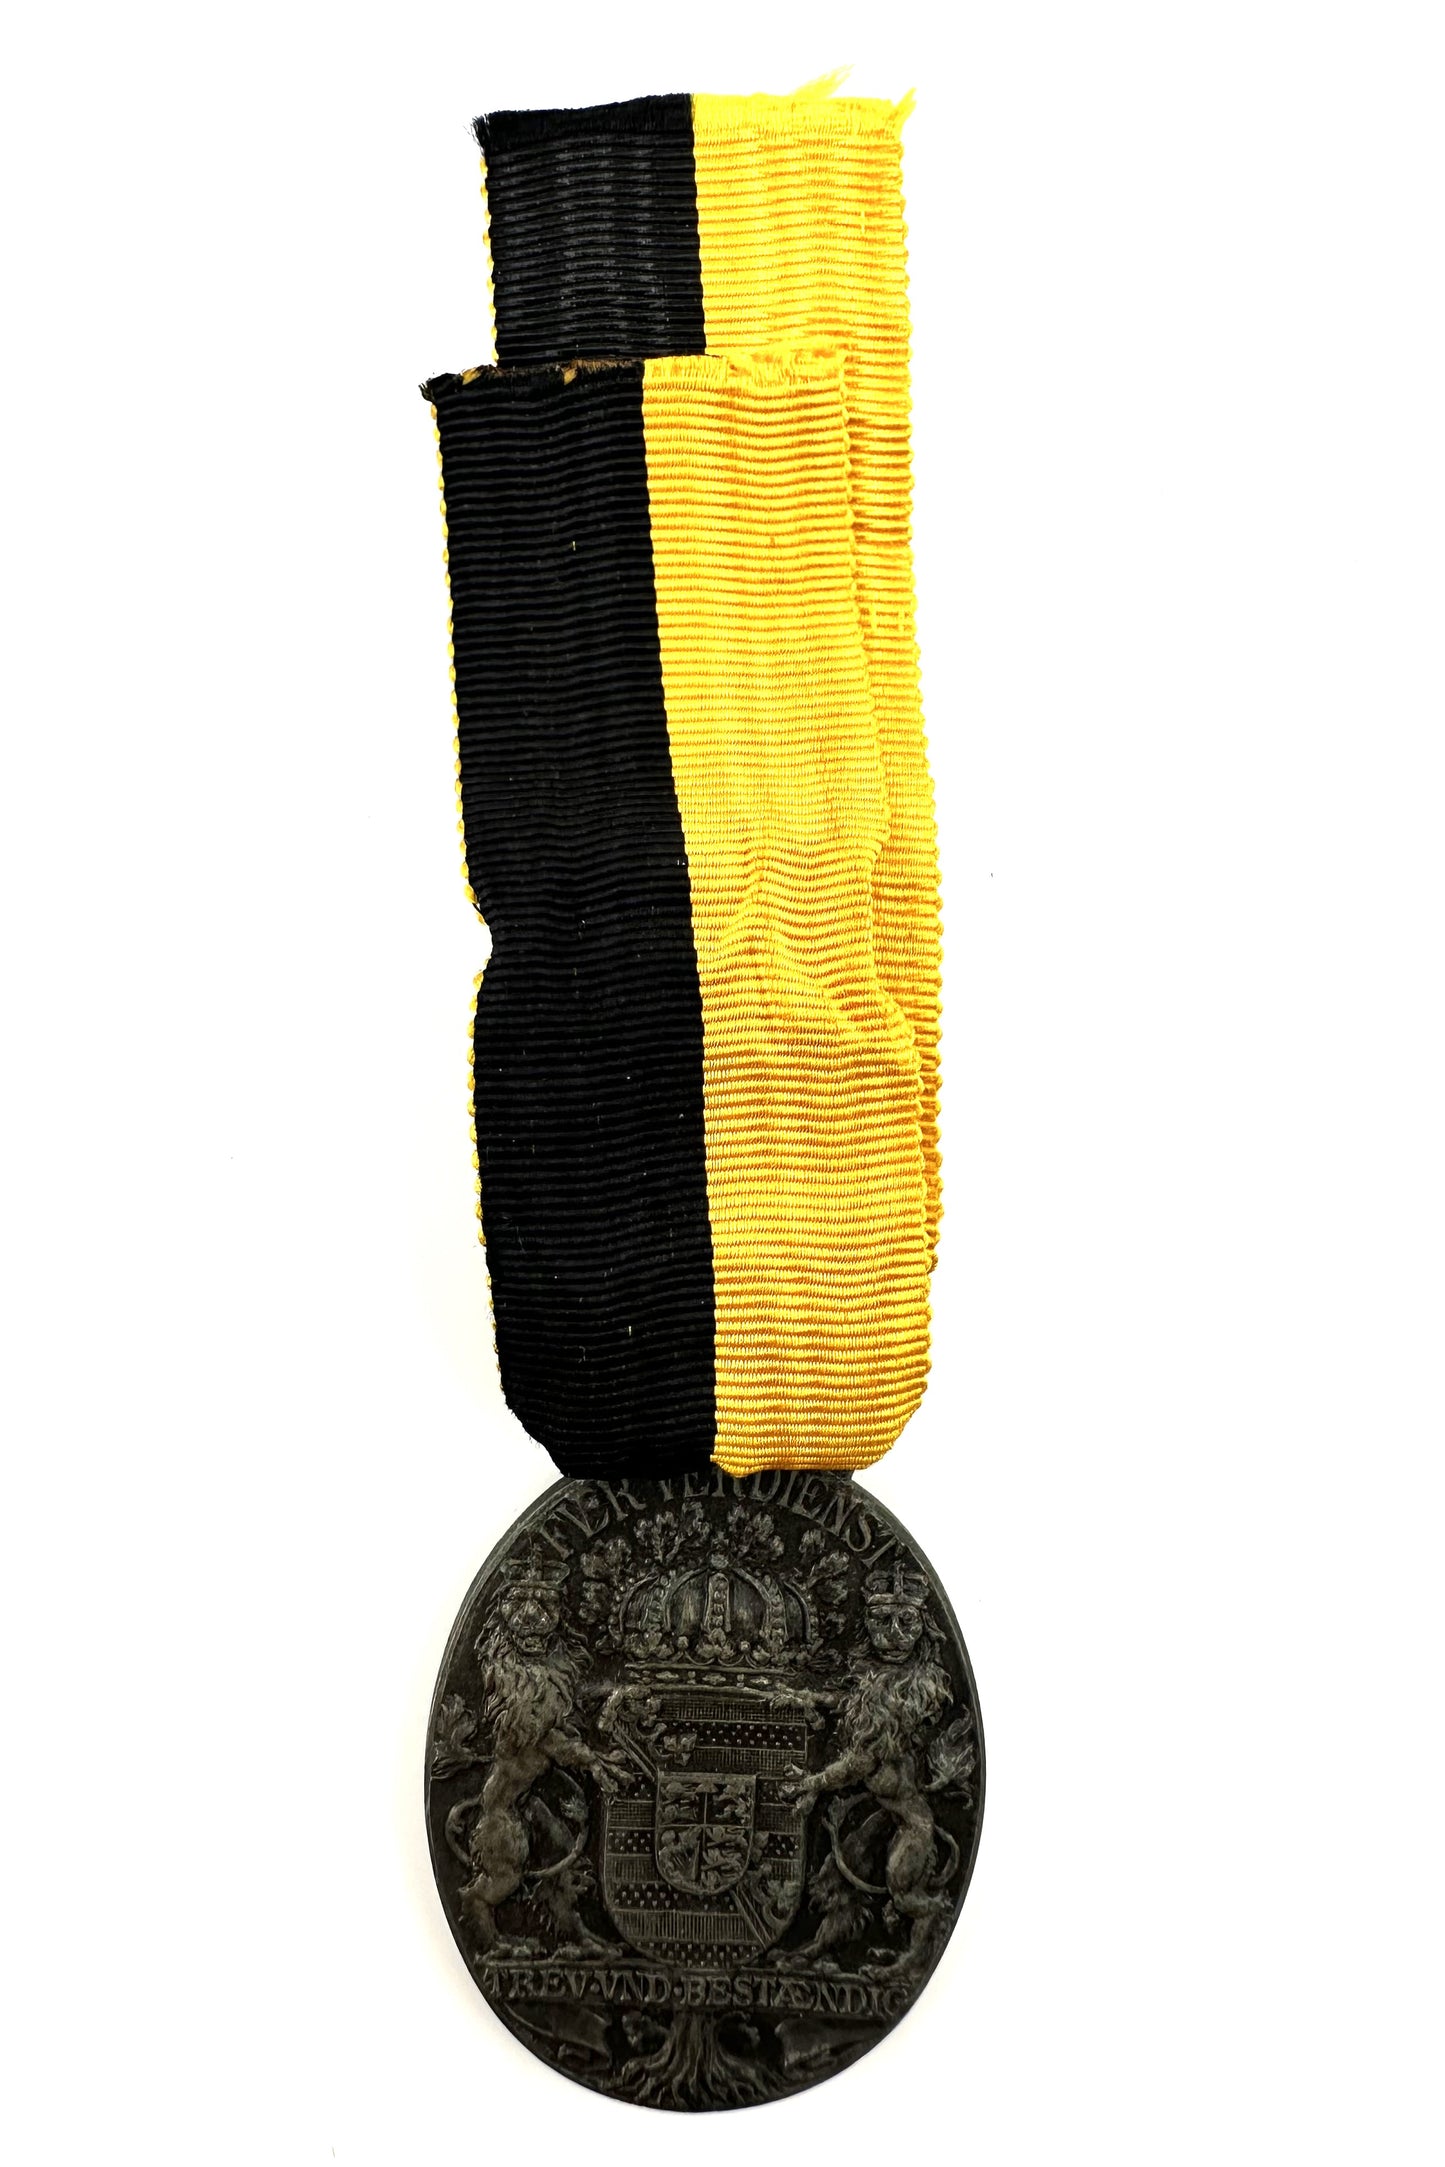 Saxe-Coburg Gotha Carl Eduard Oval Medal - Derrittmeister Militaria Group